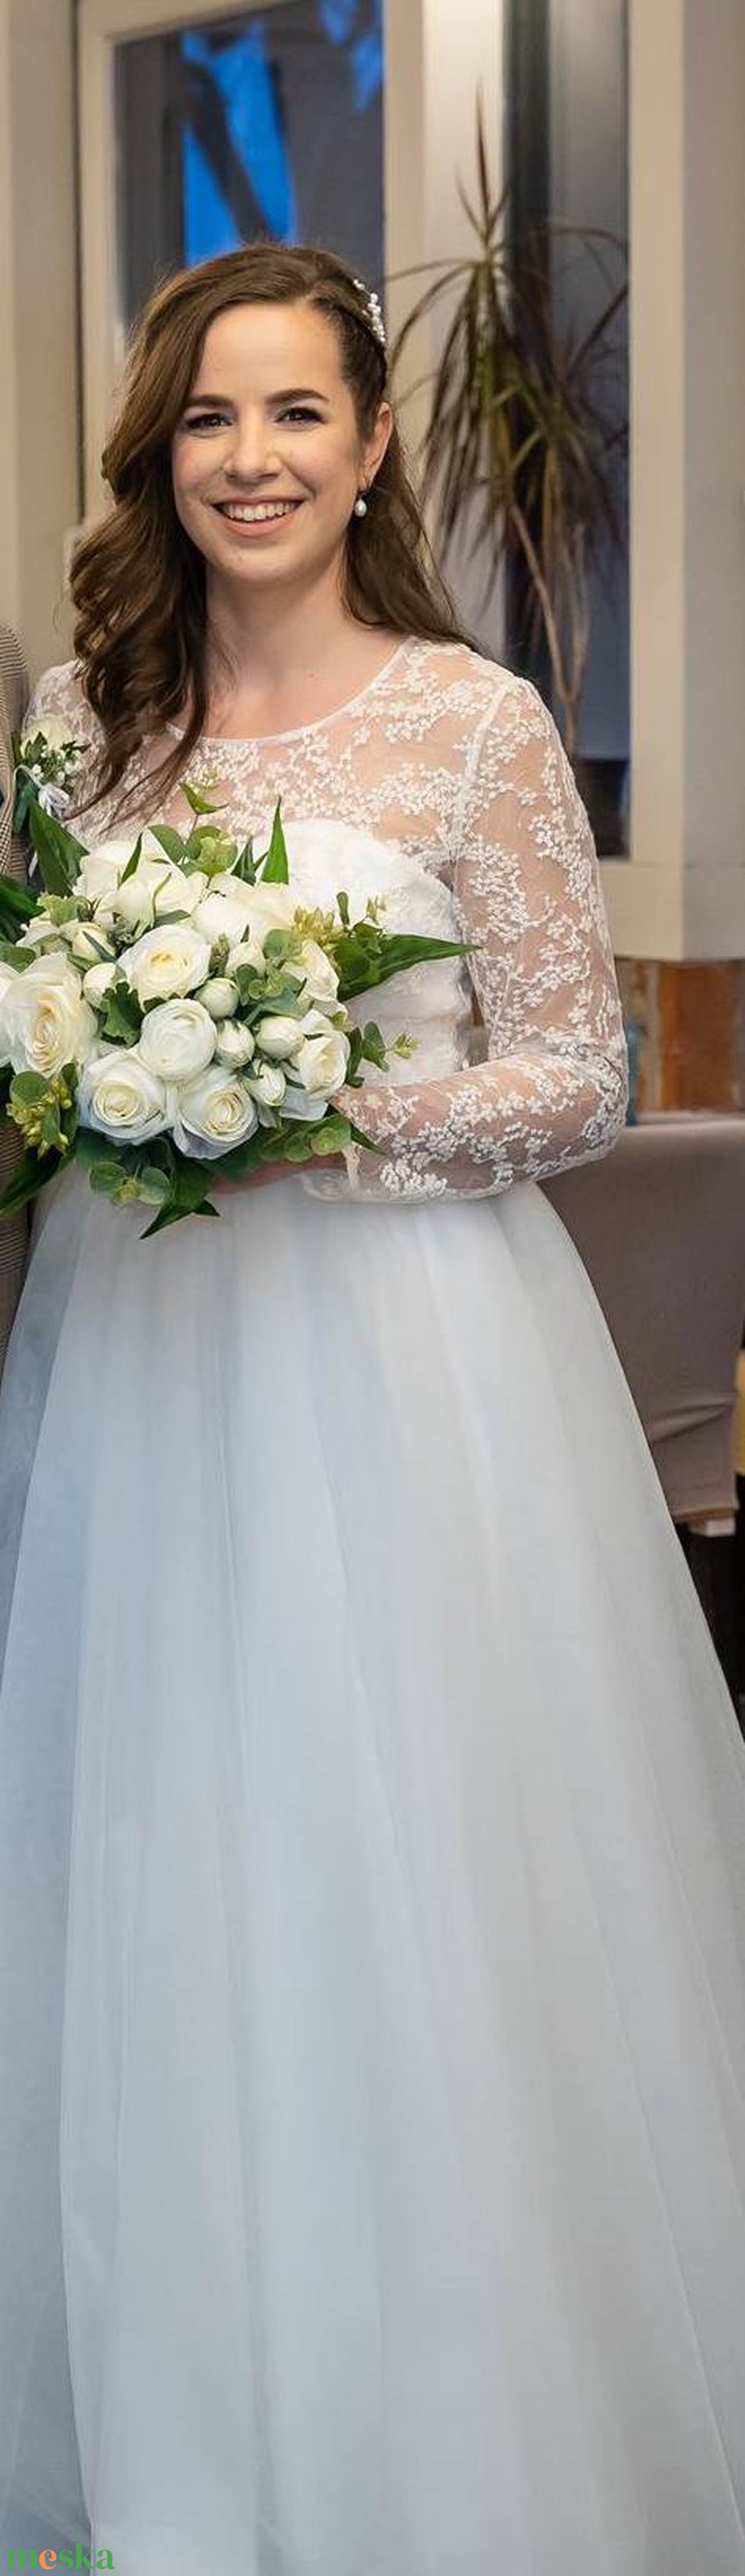 jégvirág menyasszonyi ruha - esküvő - ruha - menyasszonyi ruha - Meska.hu